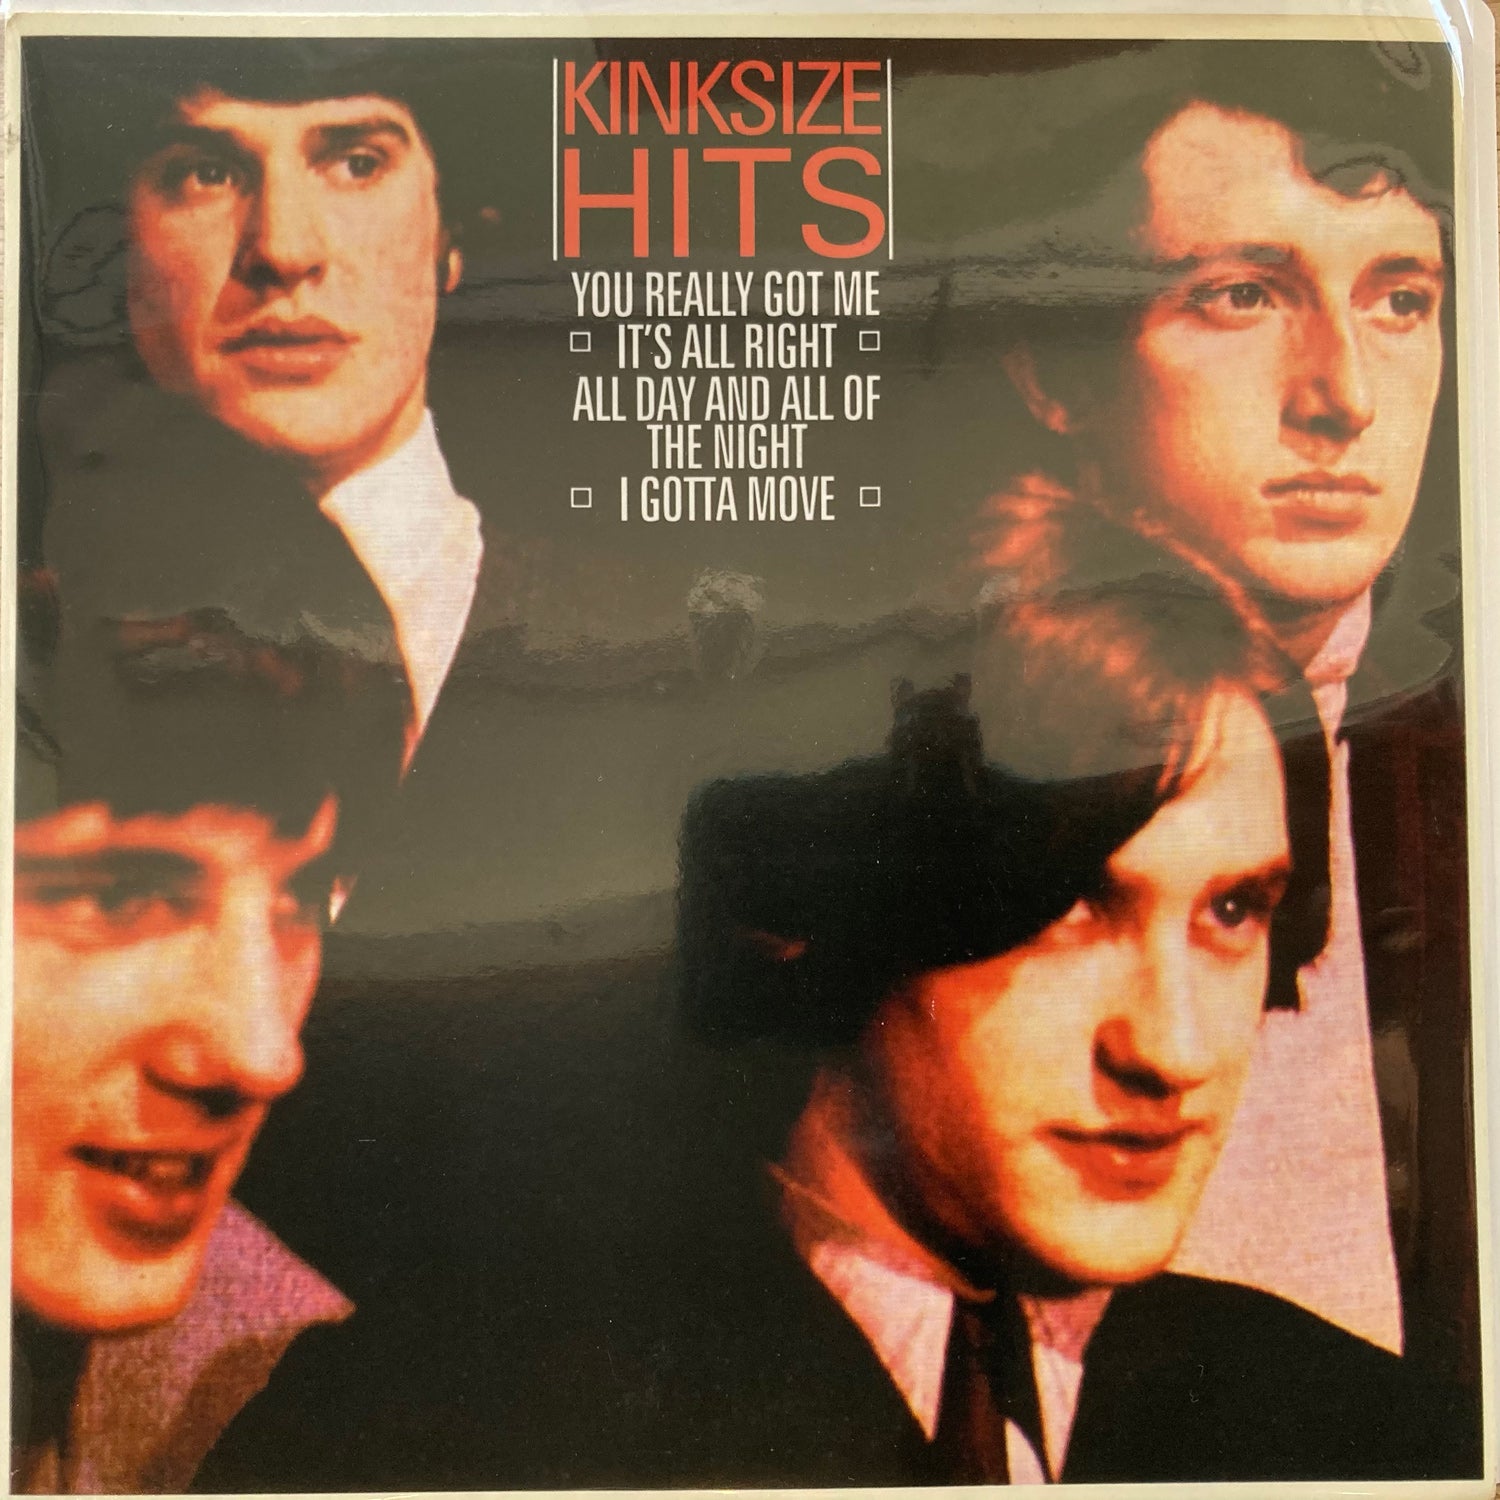 The Kinks - Kinksize Hits (7")